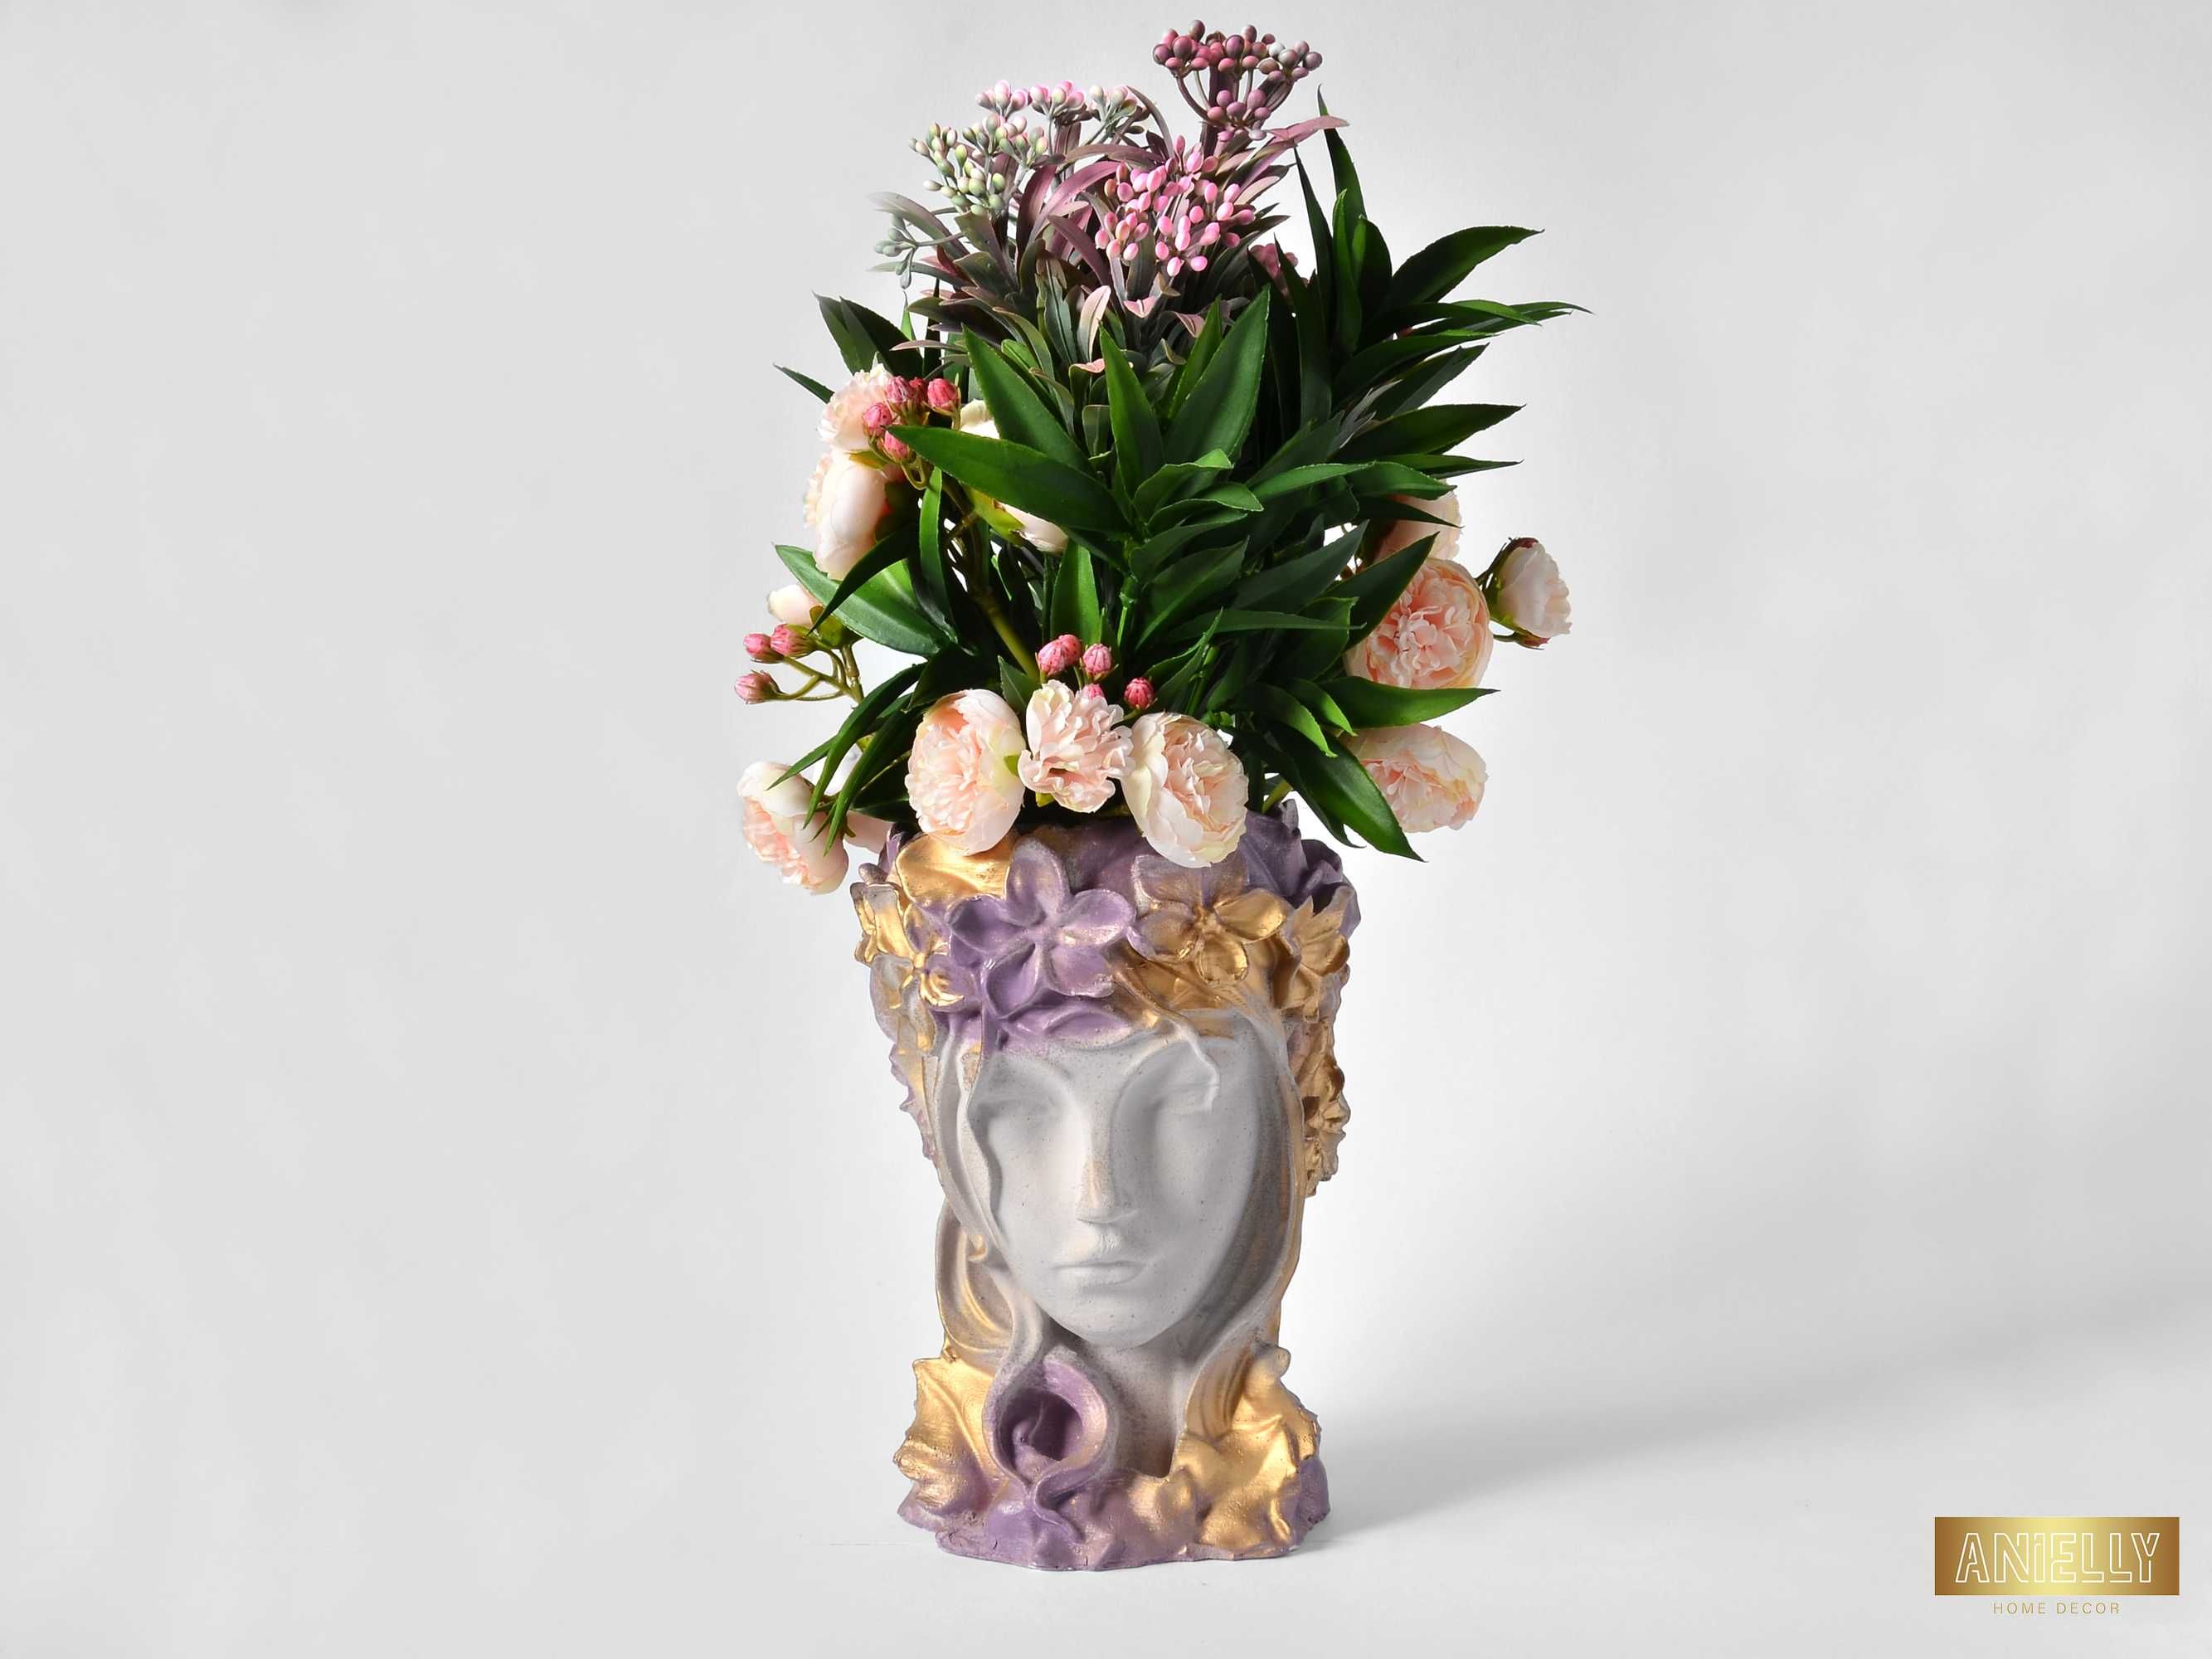 Кашпа с форма на женска глава / Лилава арт кашпа с лице / Бюст Арвен